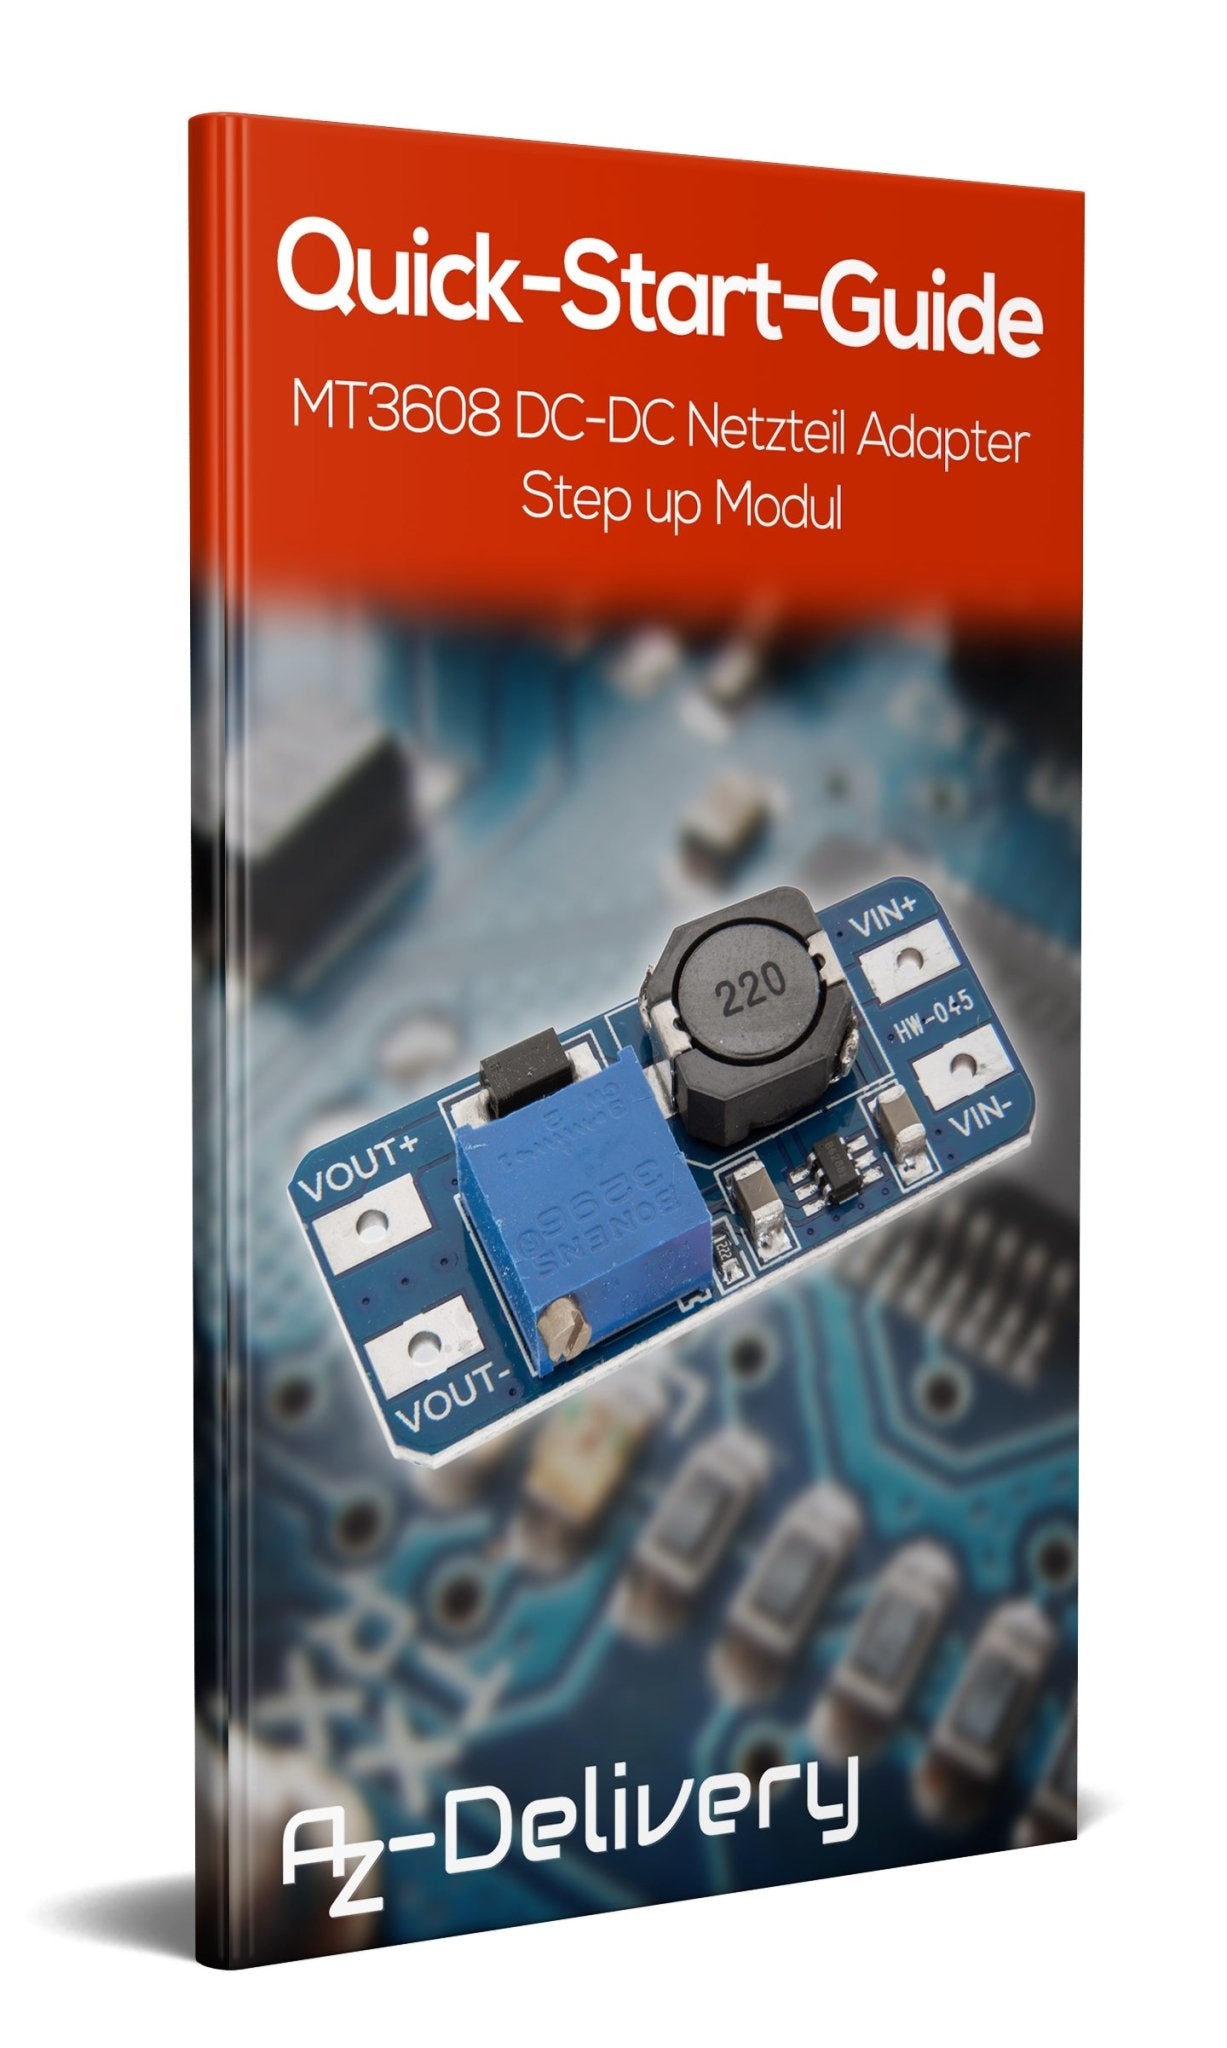 MT3608 DC-DC Netzteil Adapter Step up Modul